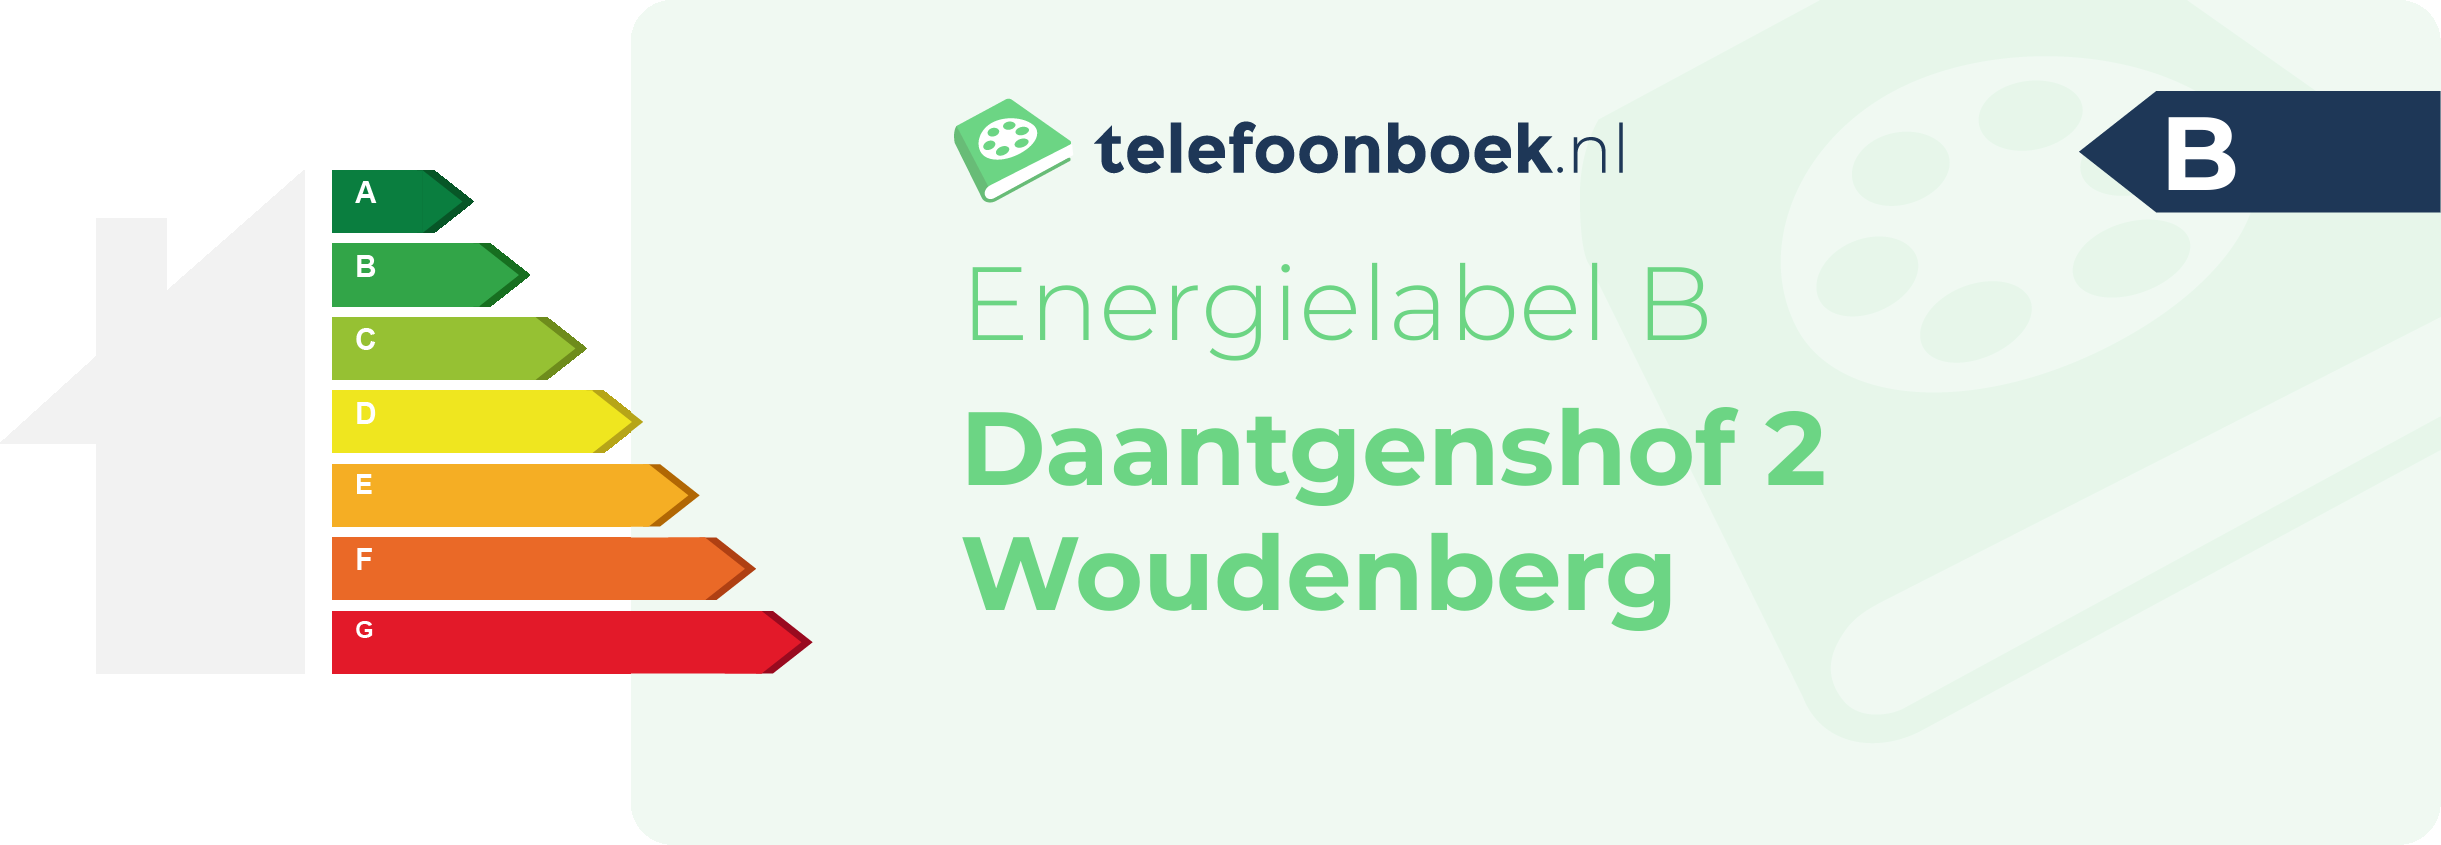 Energielabel Daantgenshof 2 Woudenberg